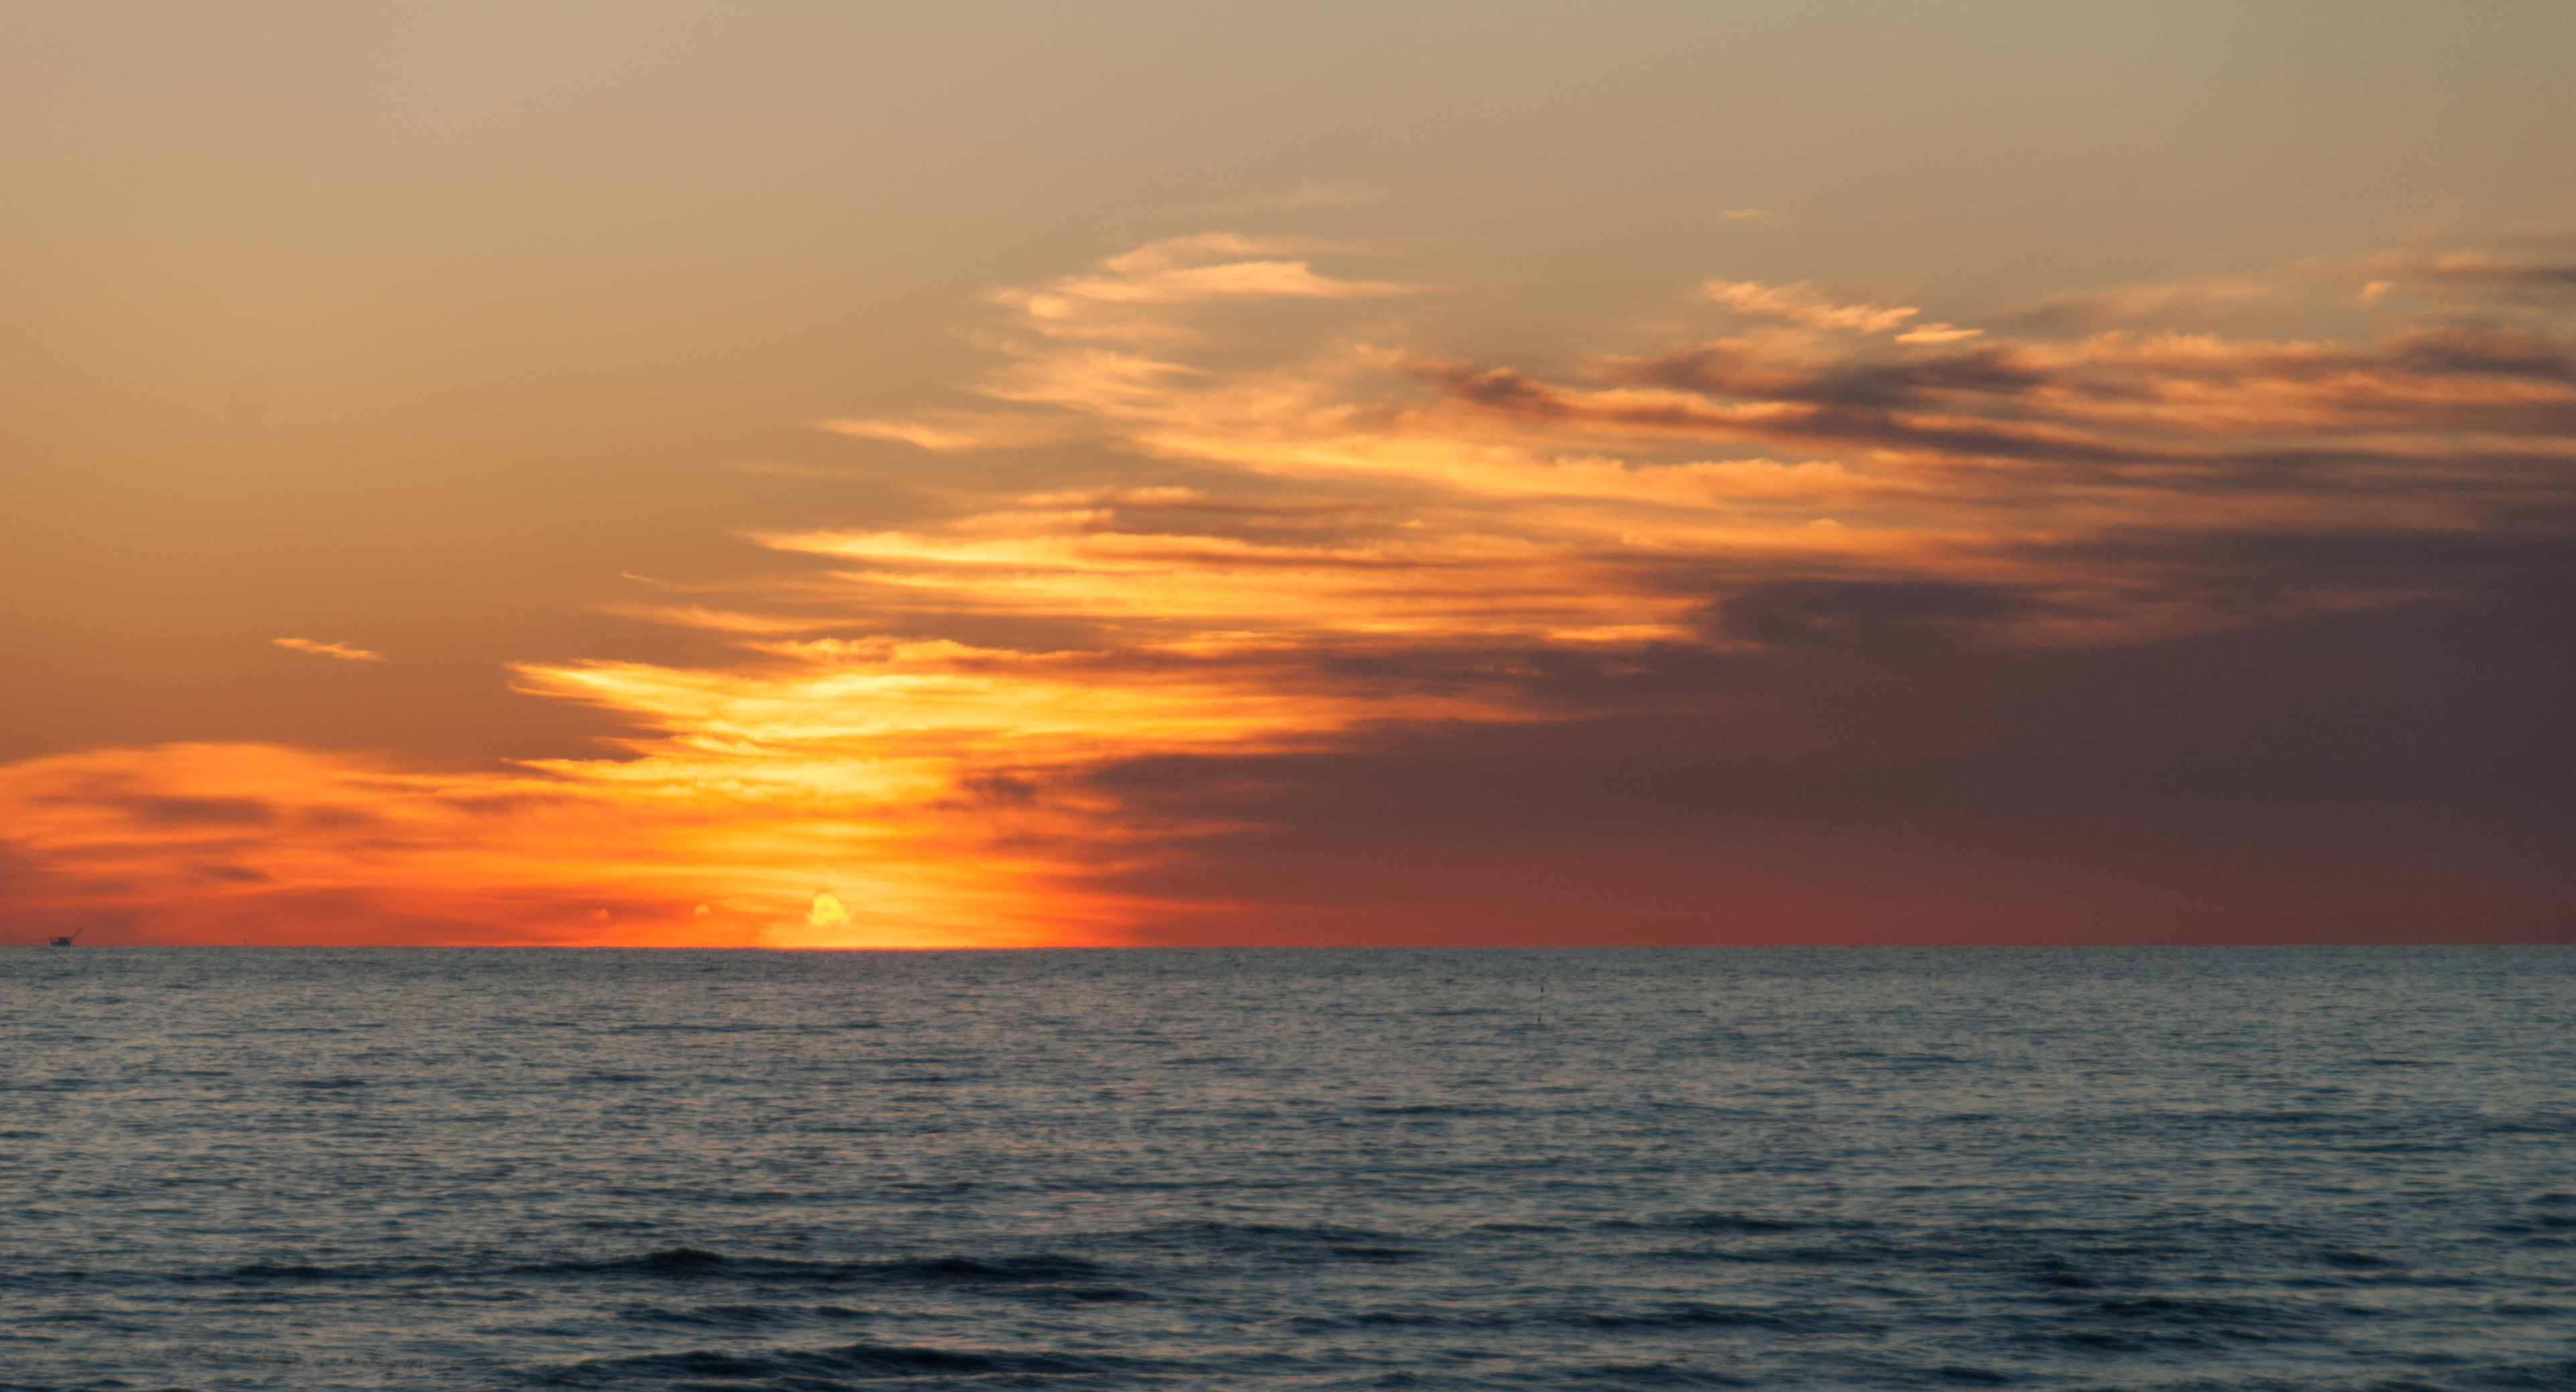 Sunset at sea photo